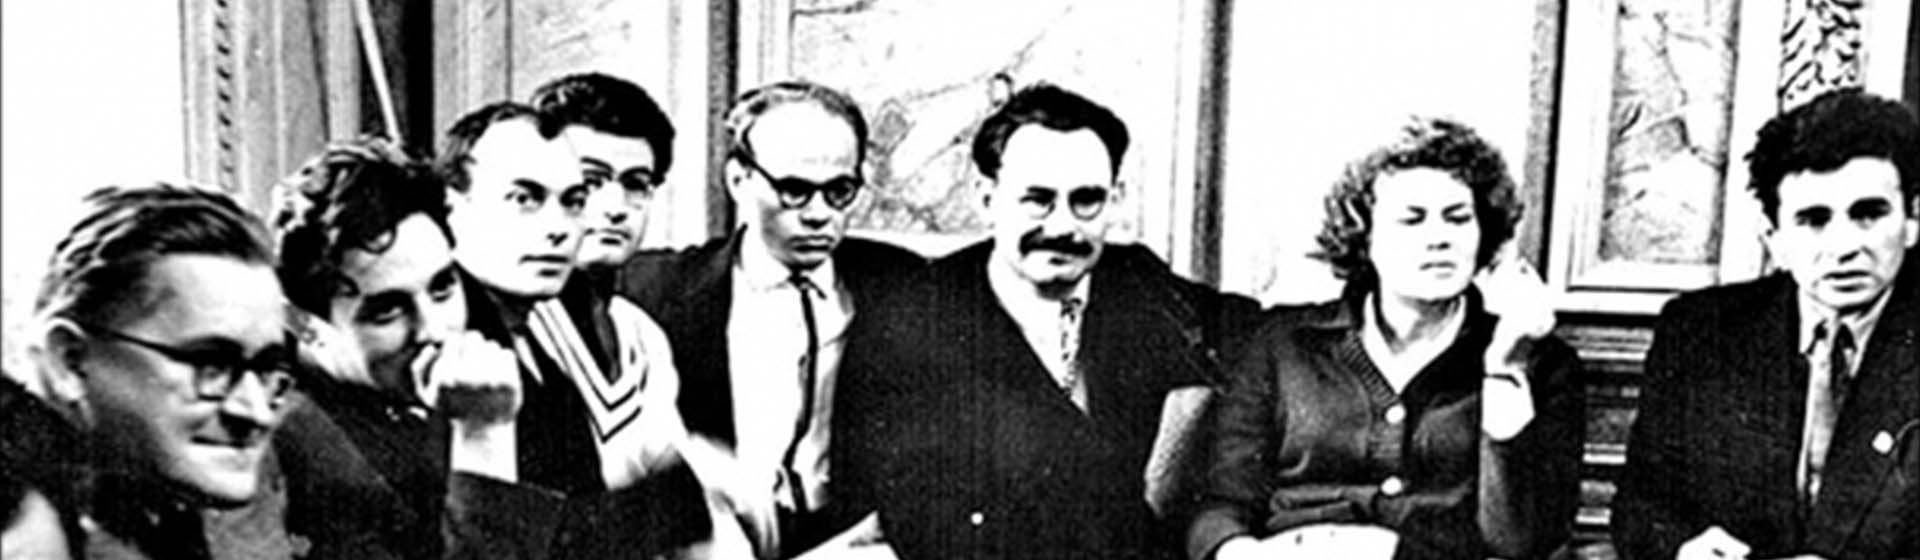 Іван Світличний, шістдесятники 1960